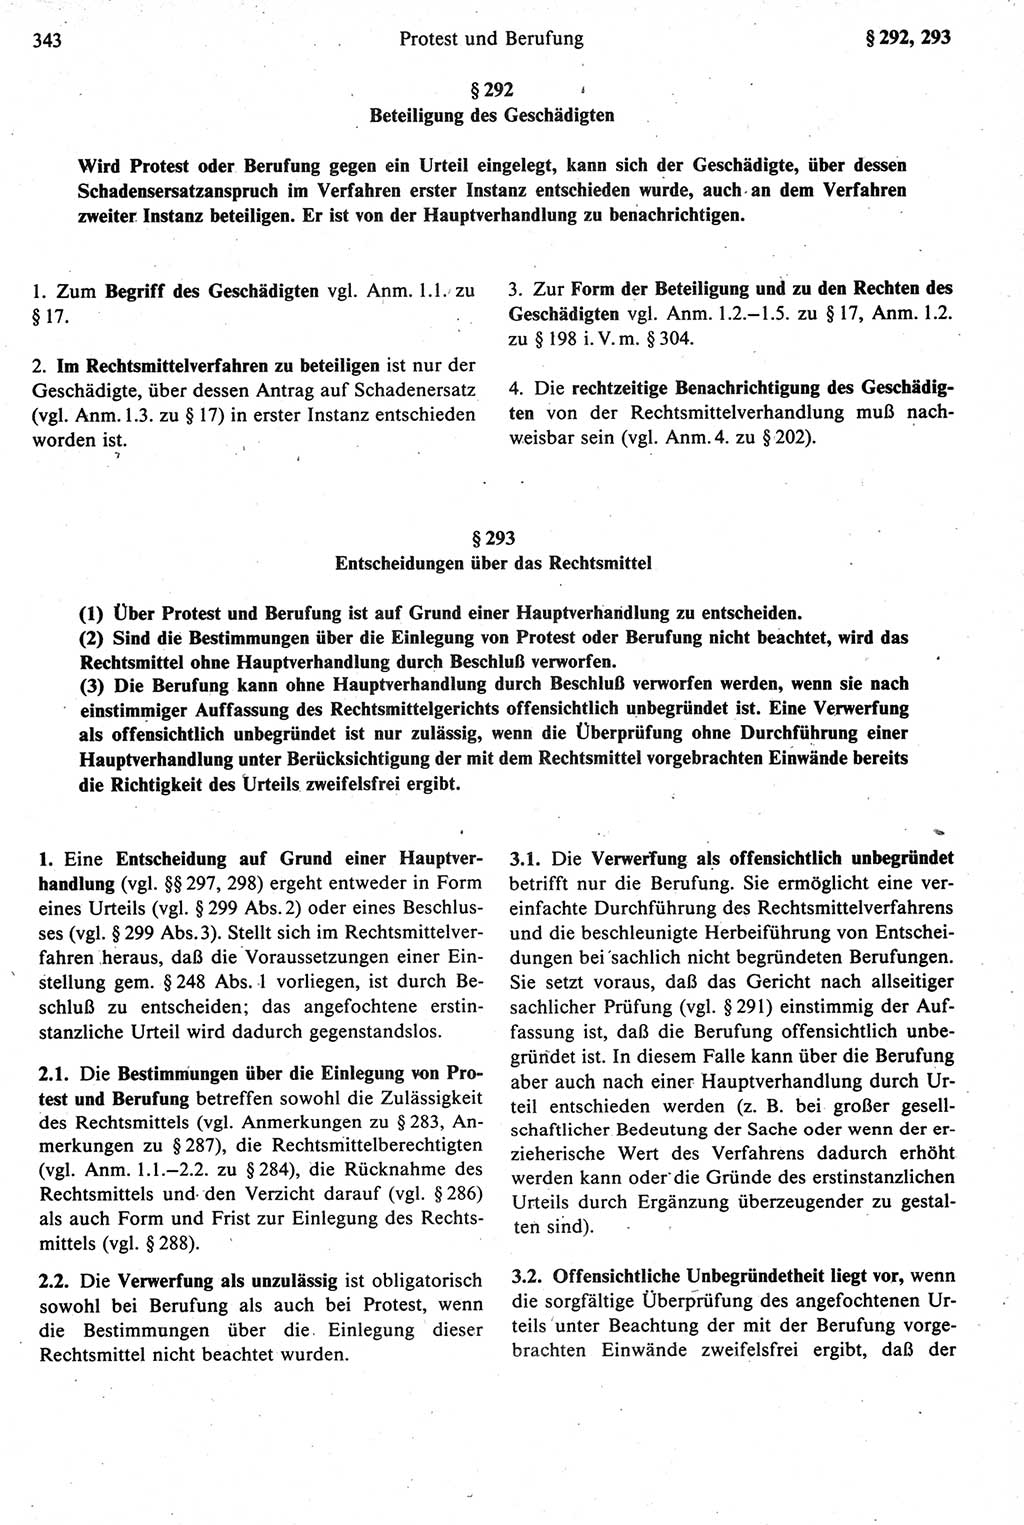 Strafprozeßrecht der DDR [Deutsche Demokratische Republik], Kommentar zur Strafprozeßordnung (StPO) 1987, Seite 343 (Strafprozeßr. DDR Komm. StPO 1987, S. 343)